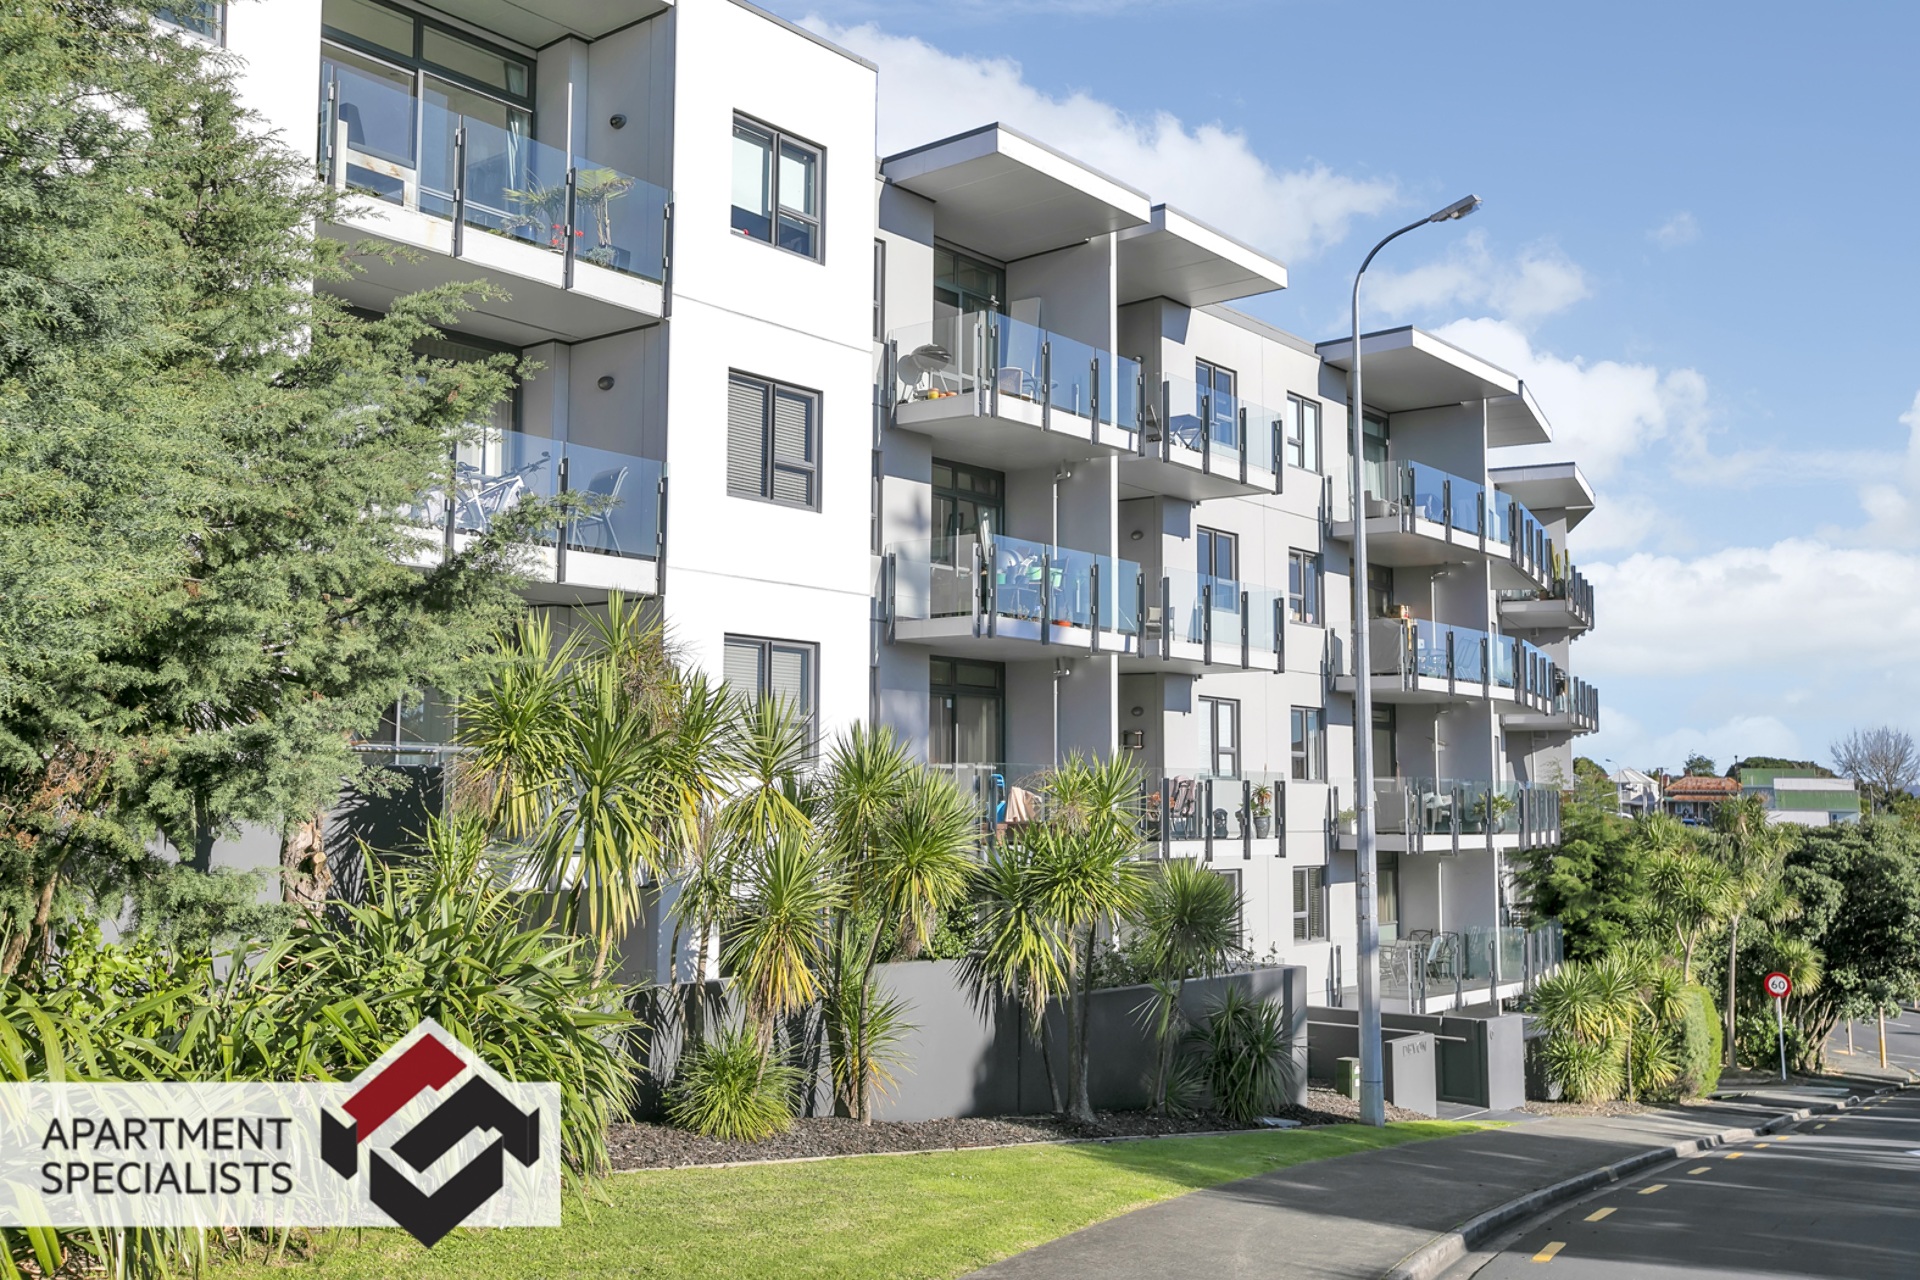 2 | 6 Piwakawaka Street, Eden Terrace | Apartment Specialists